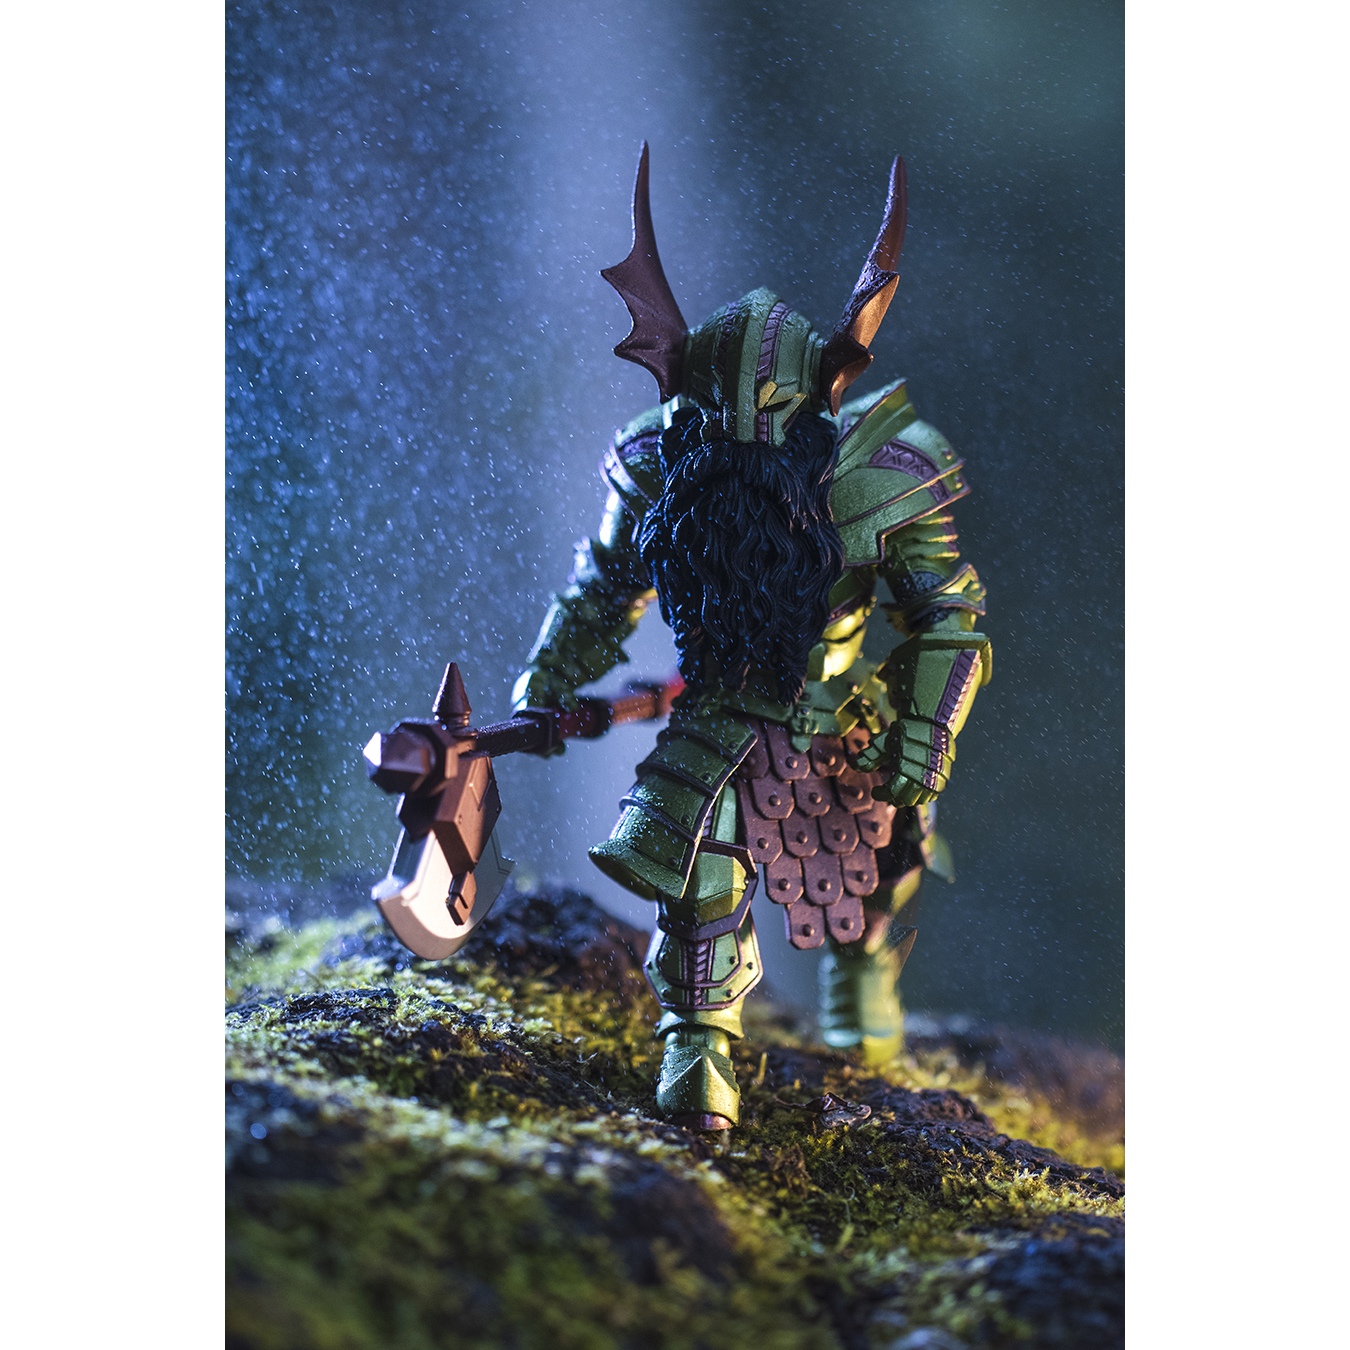 Mythic Legions Orn Steelhide dwarf